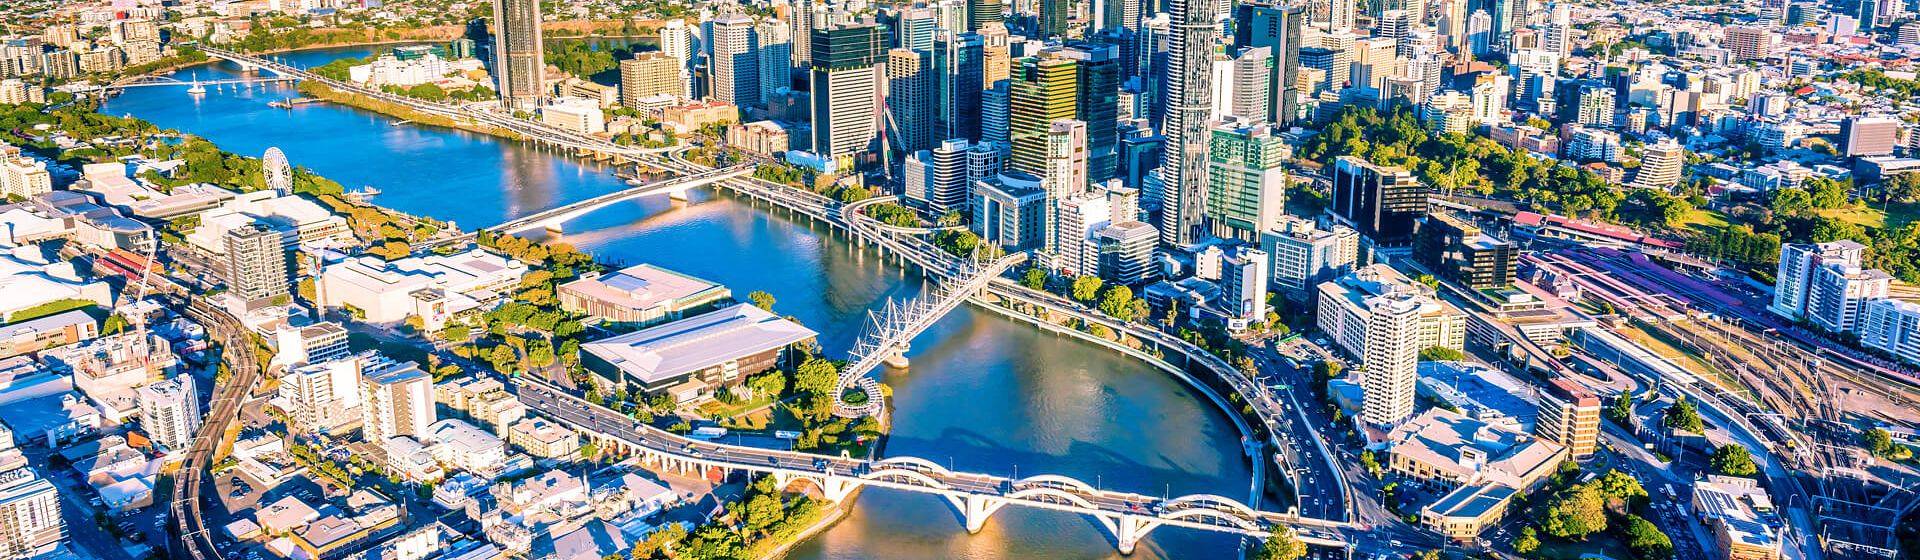 Holidays to Brisbane Image